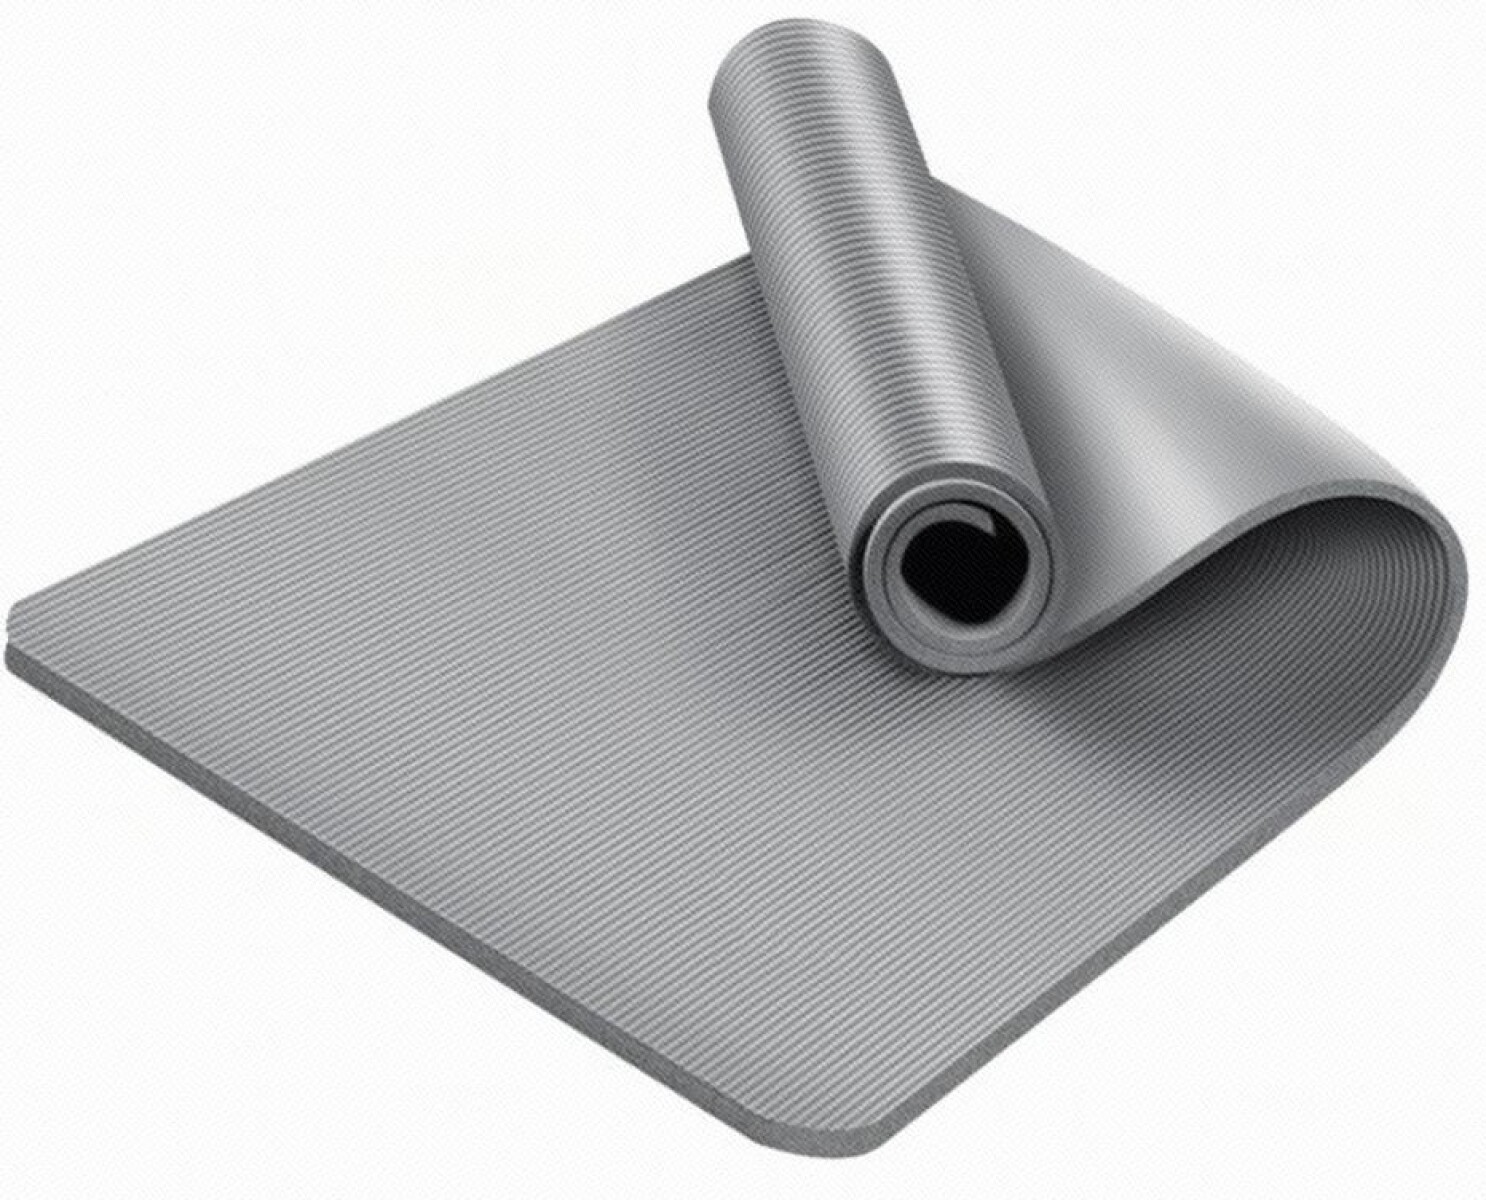 Mat colchoneta de Yoga 8mm - gris 